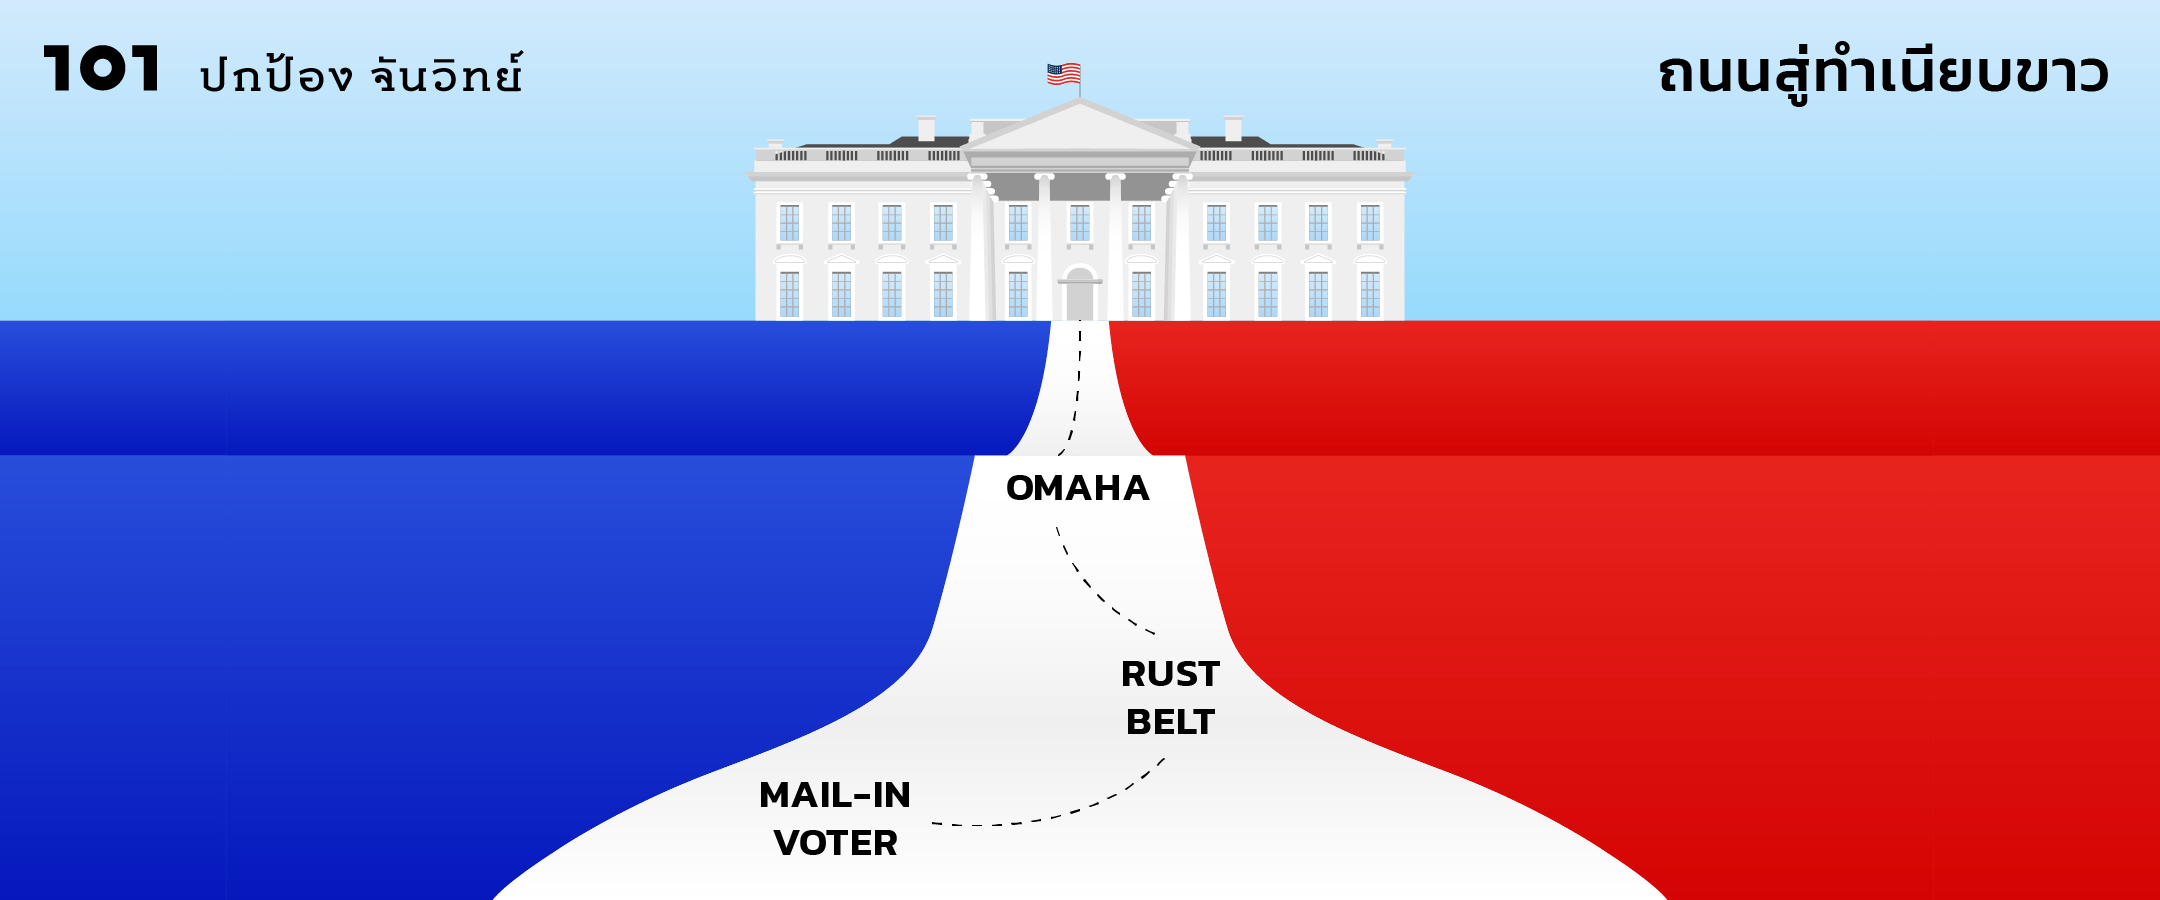 สามคำเลือกตั้งสหรัฐ 2020 : mail-in voter / Rust Belt (again!) / Omaha